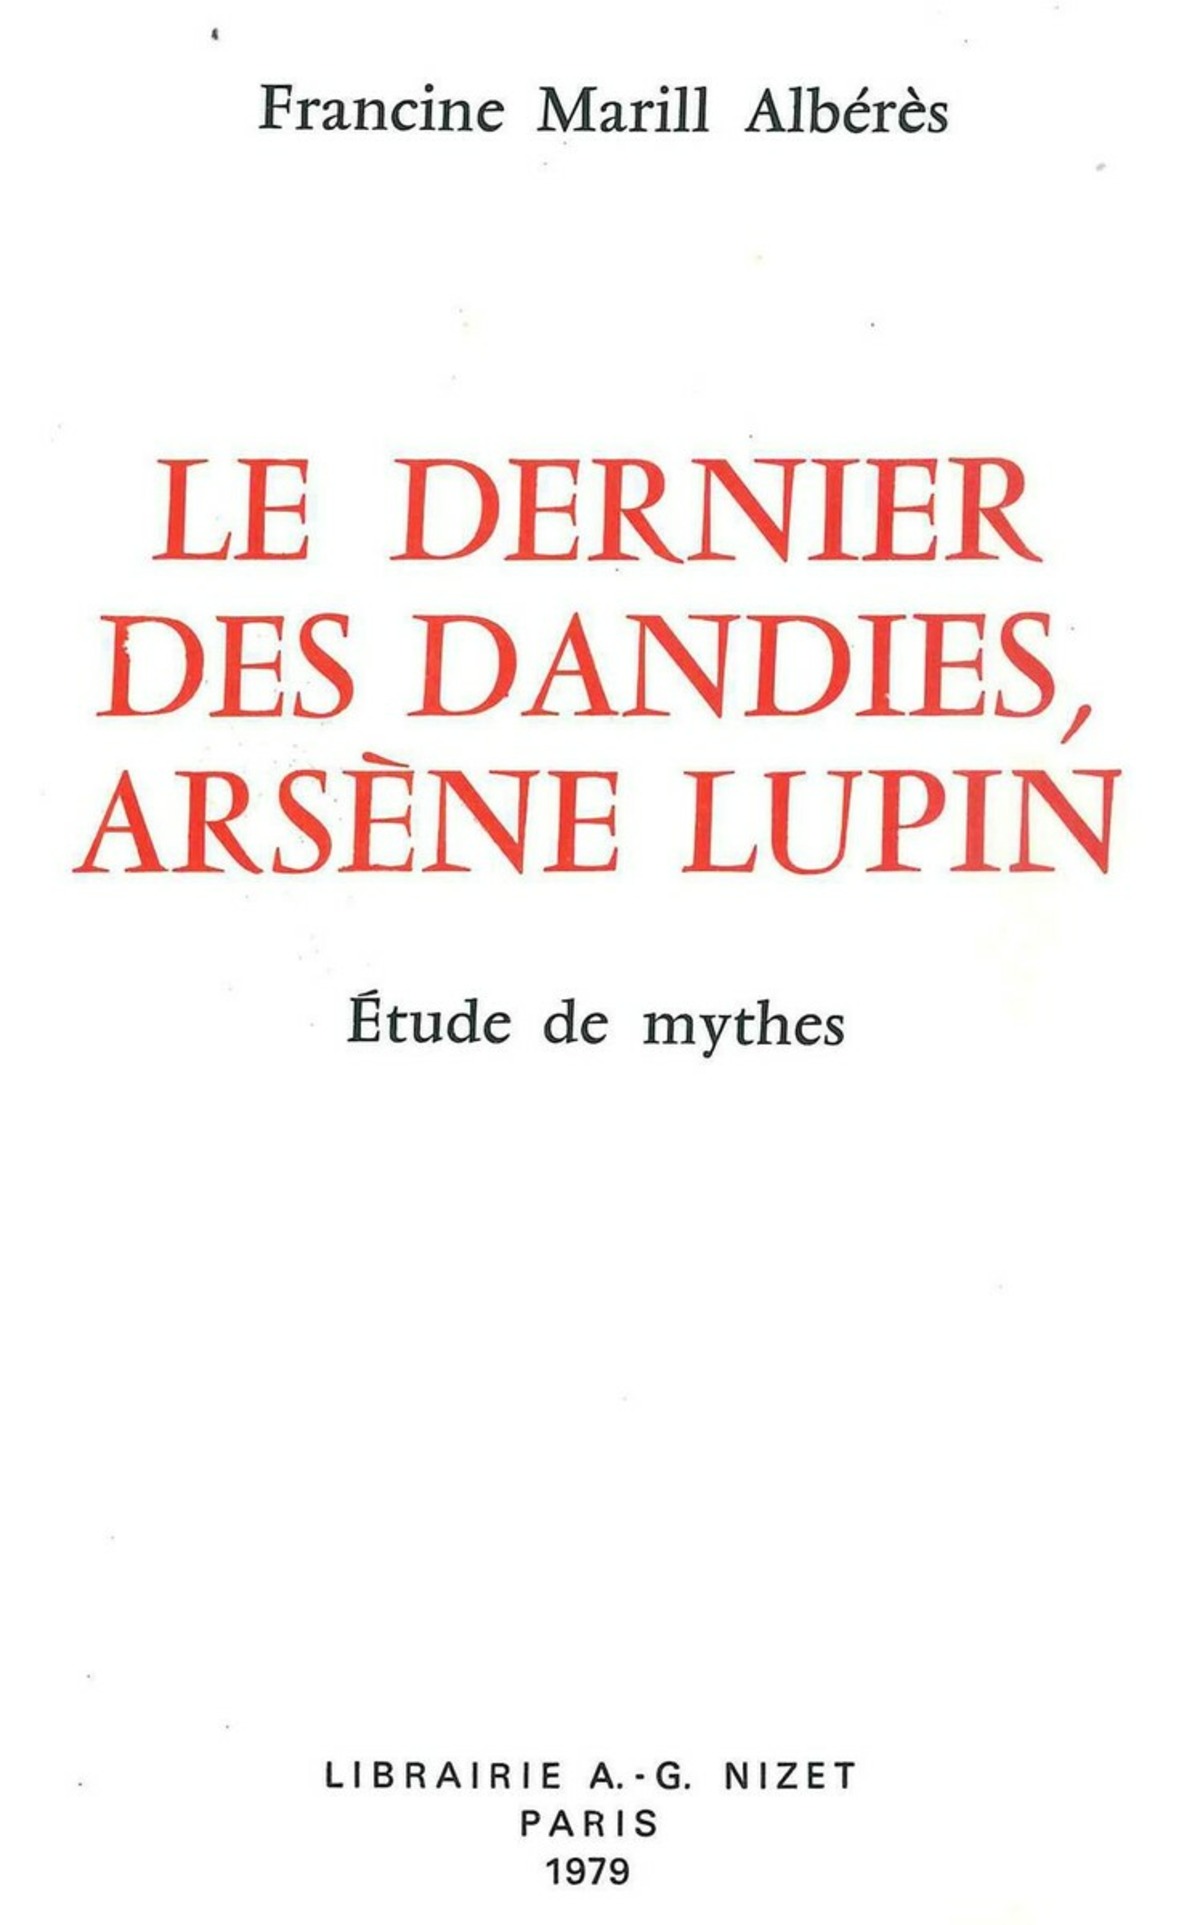 Le Dernier des dandies, Arsène Lupin